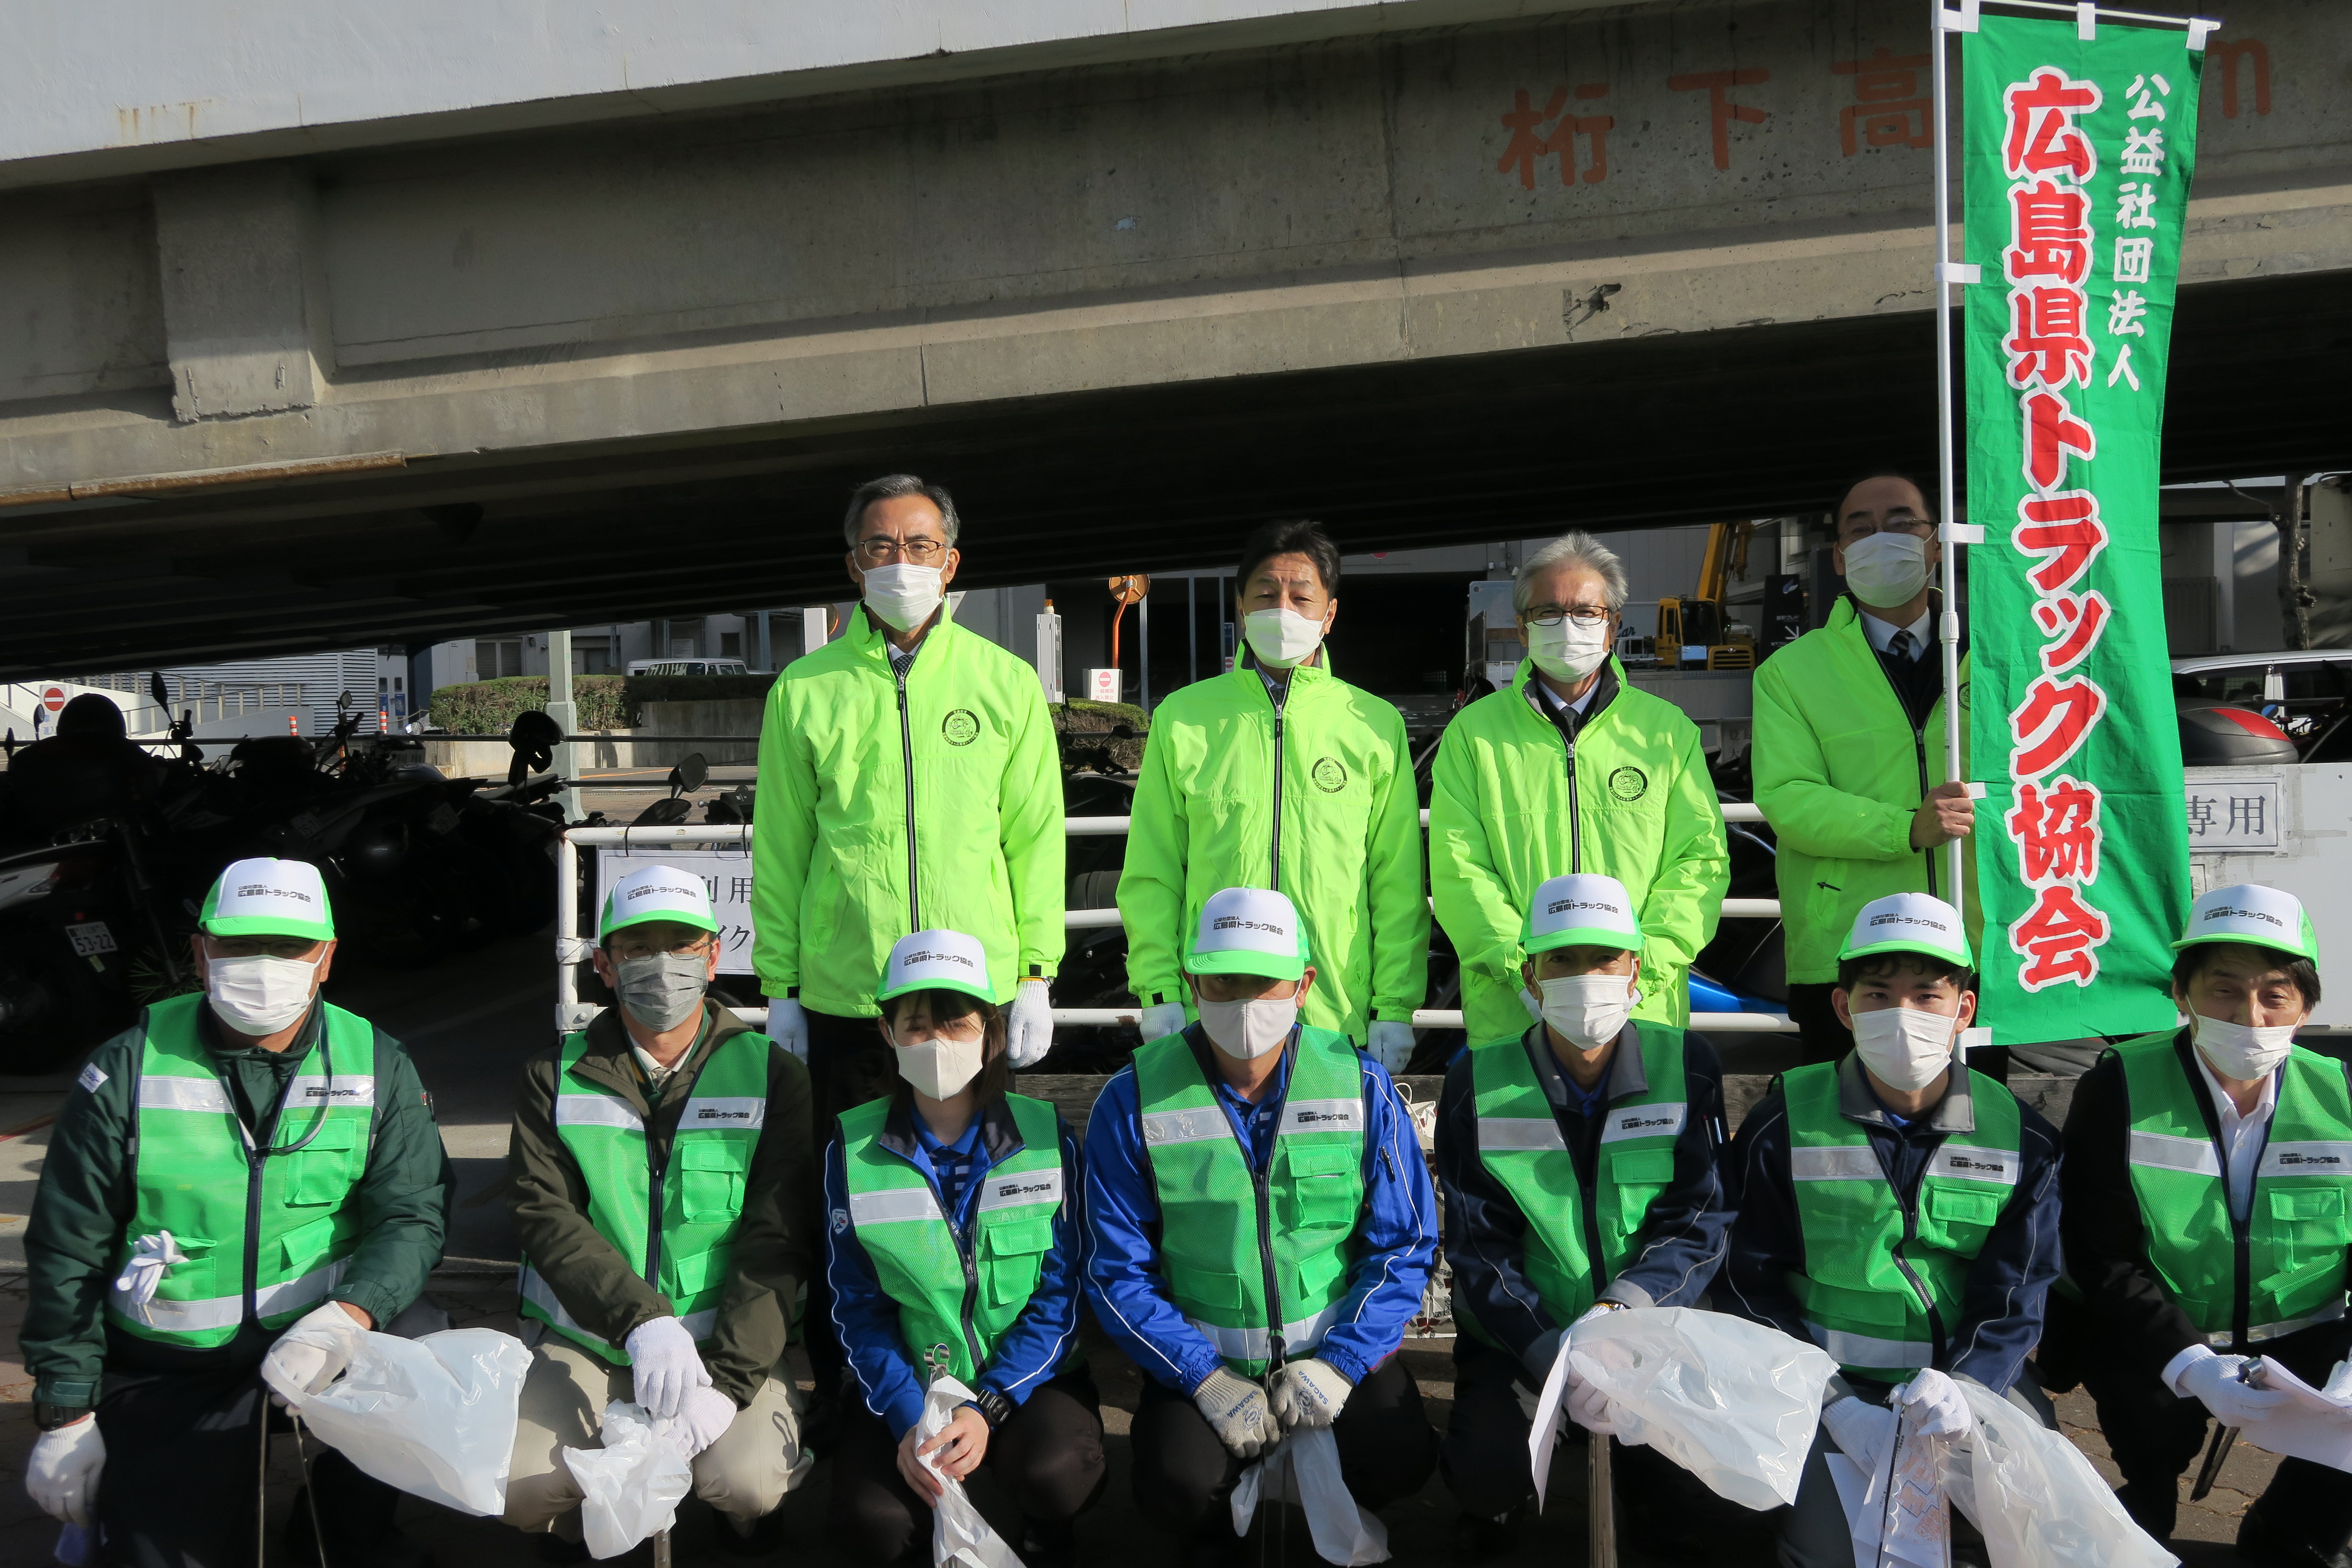 清掃に参加された広島県トラック協会の皆さん